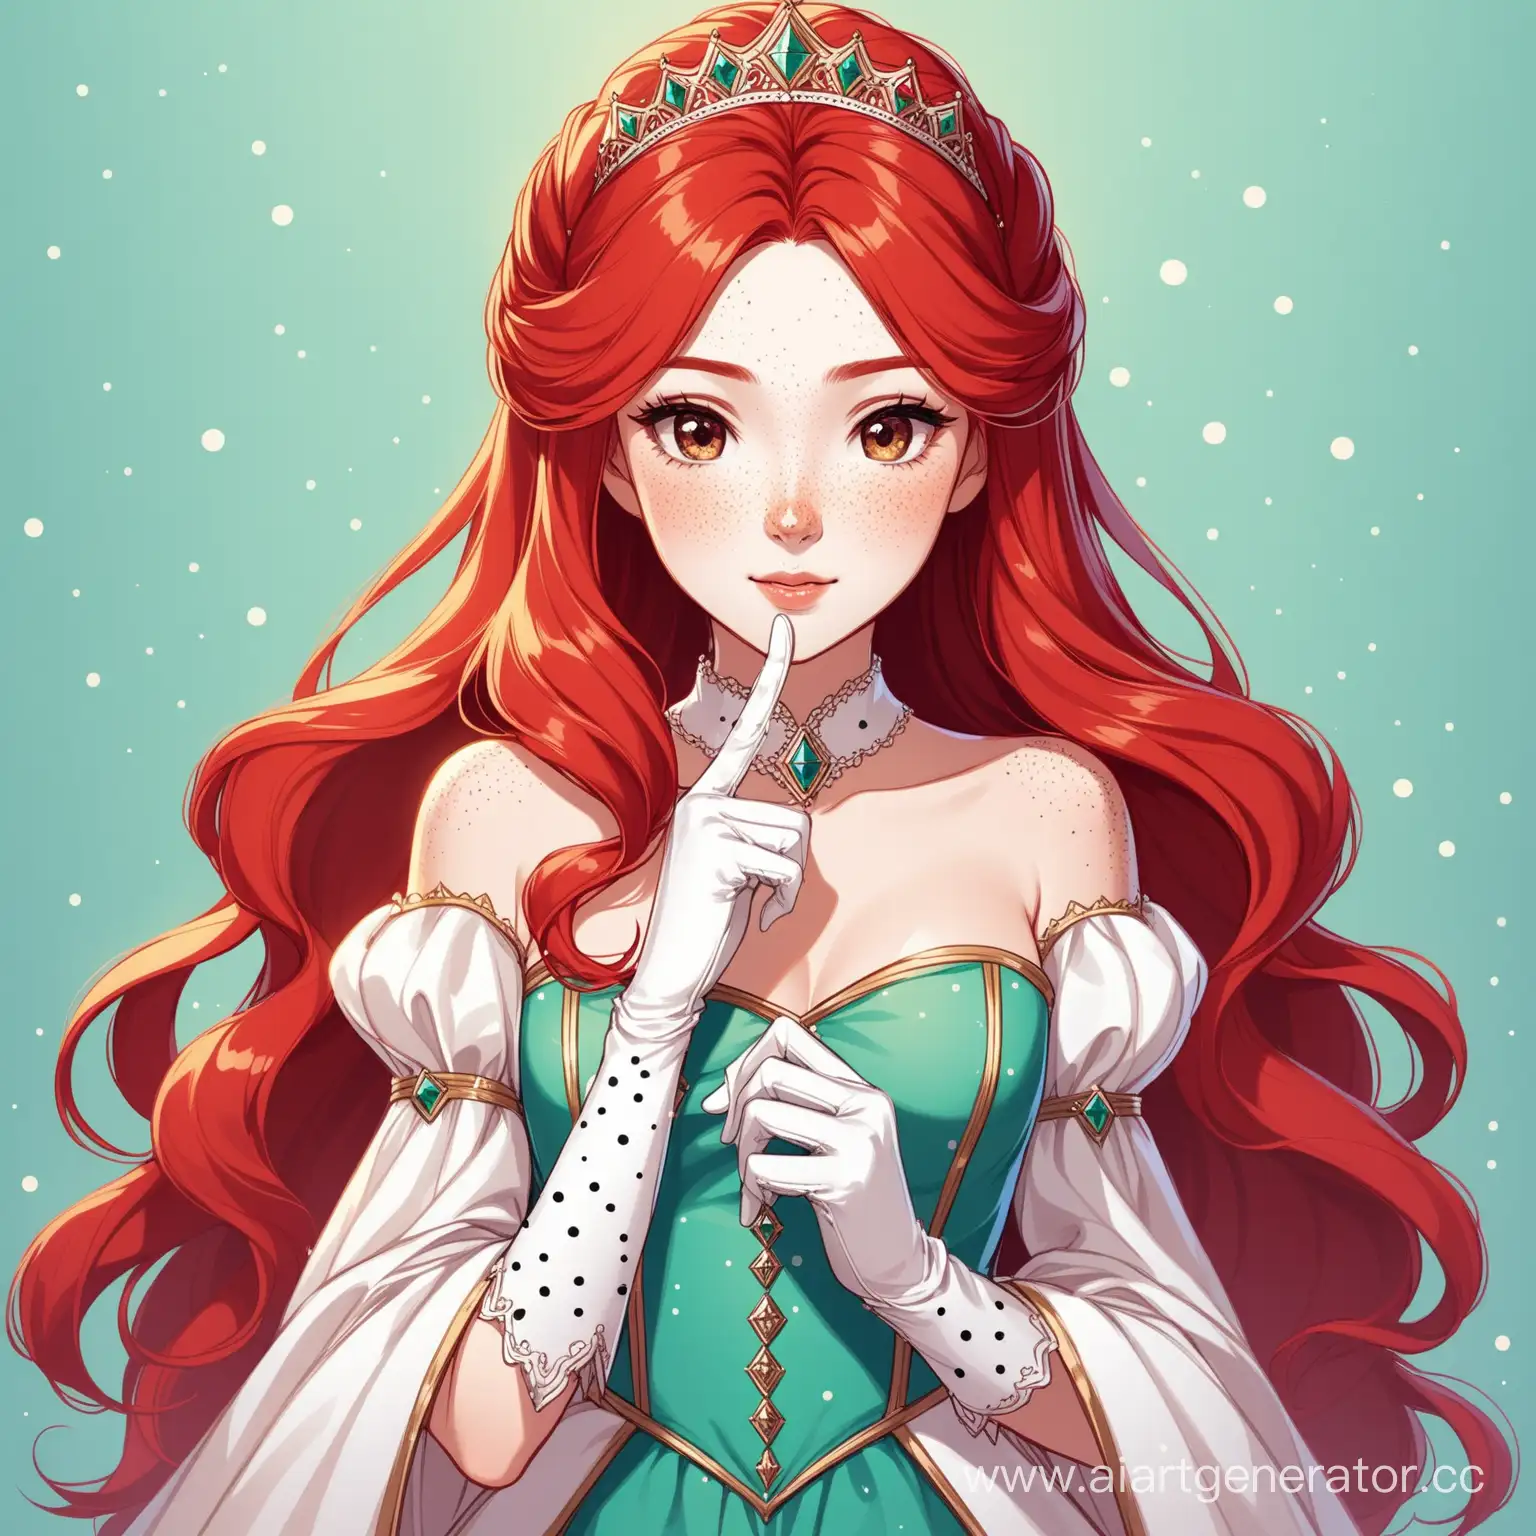 рыжая девушка принцесса аристократка в платье с веснушками и перчаткой на руке